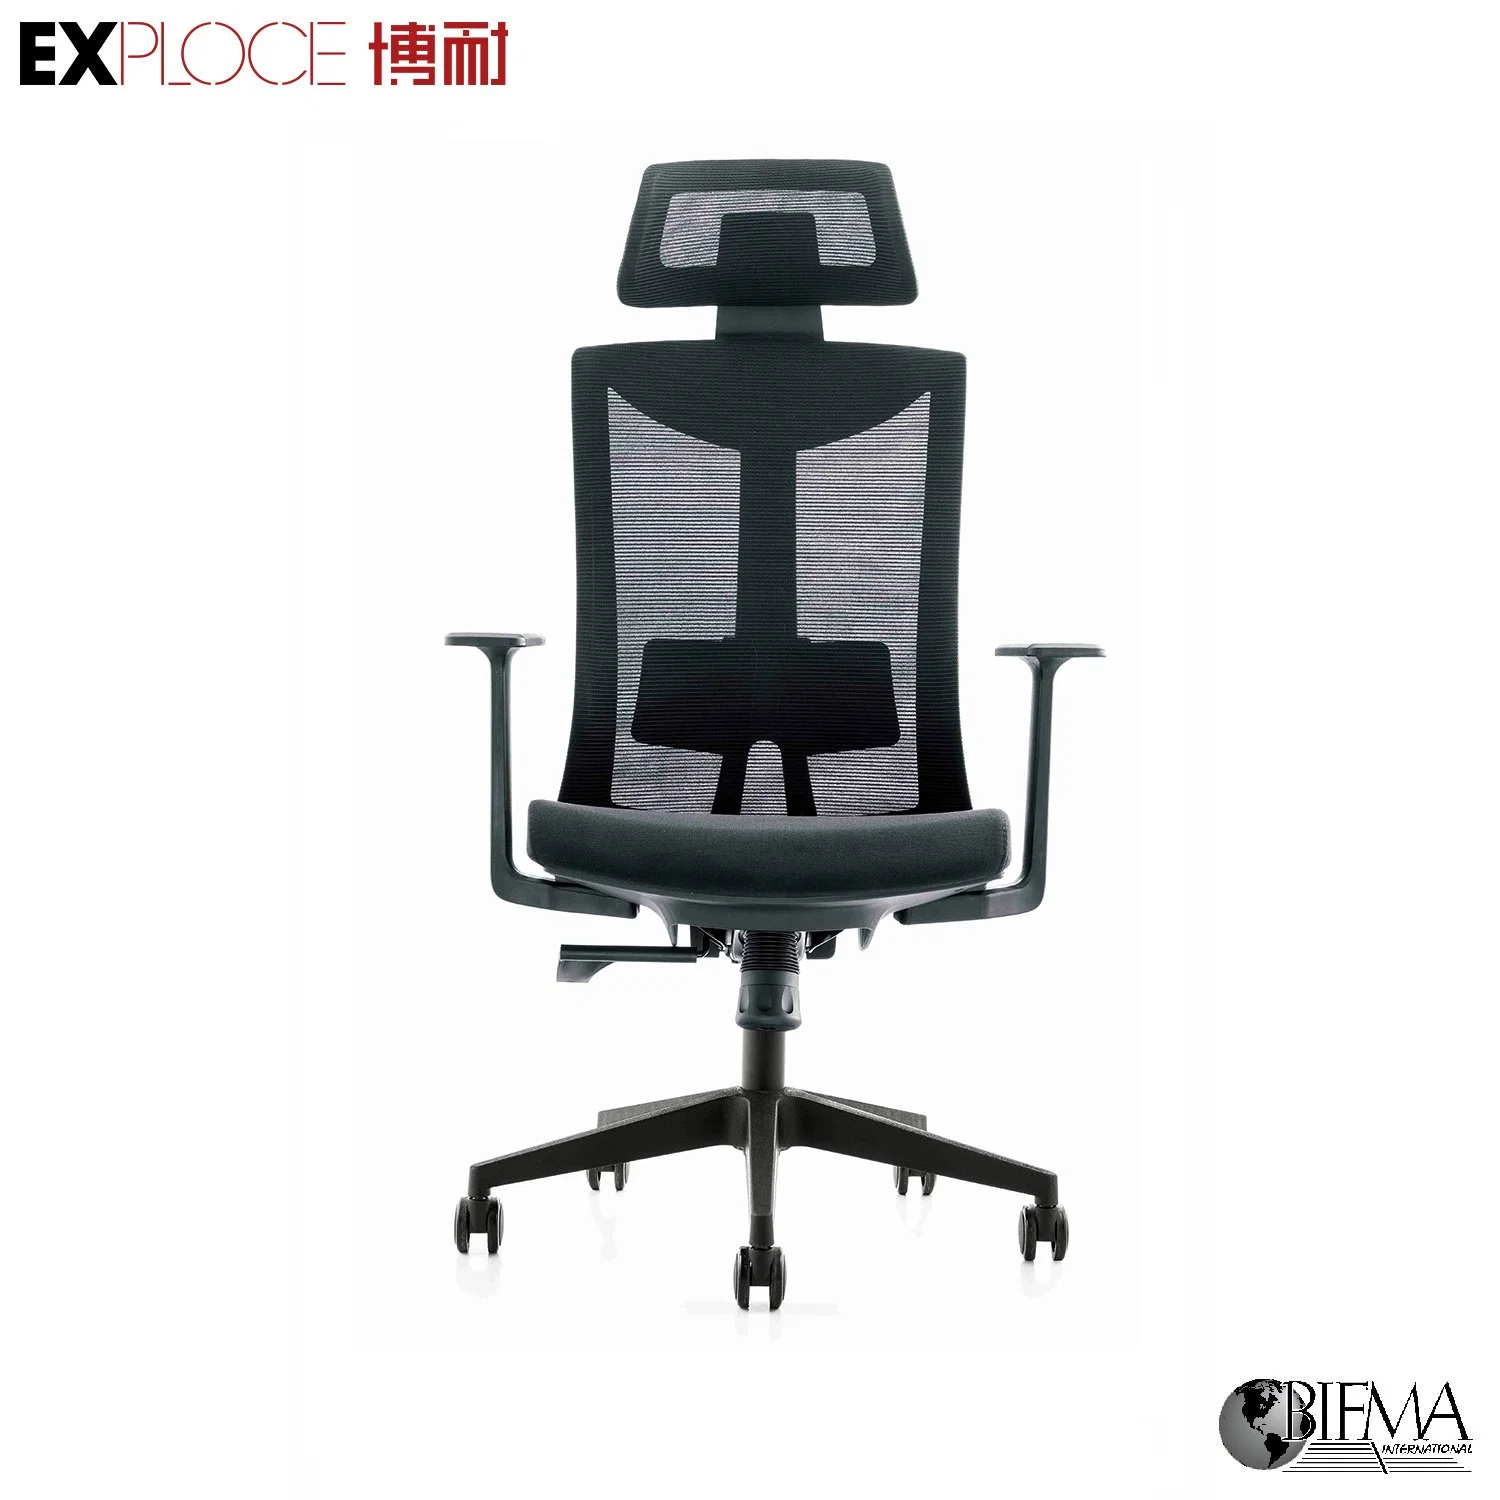 Bon prix Chaises de bureau modernes dépliables neuves Chaise ergonomique pour visiteurs Mobilier